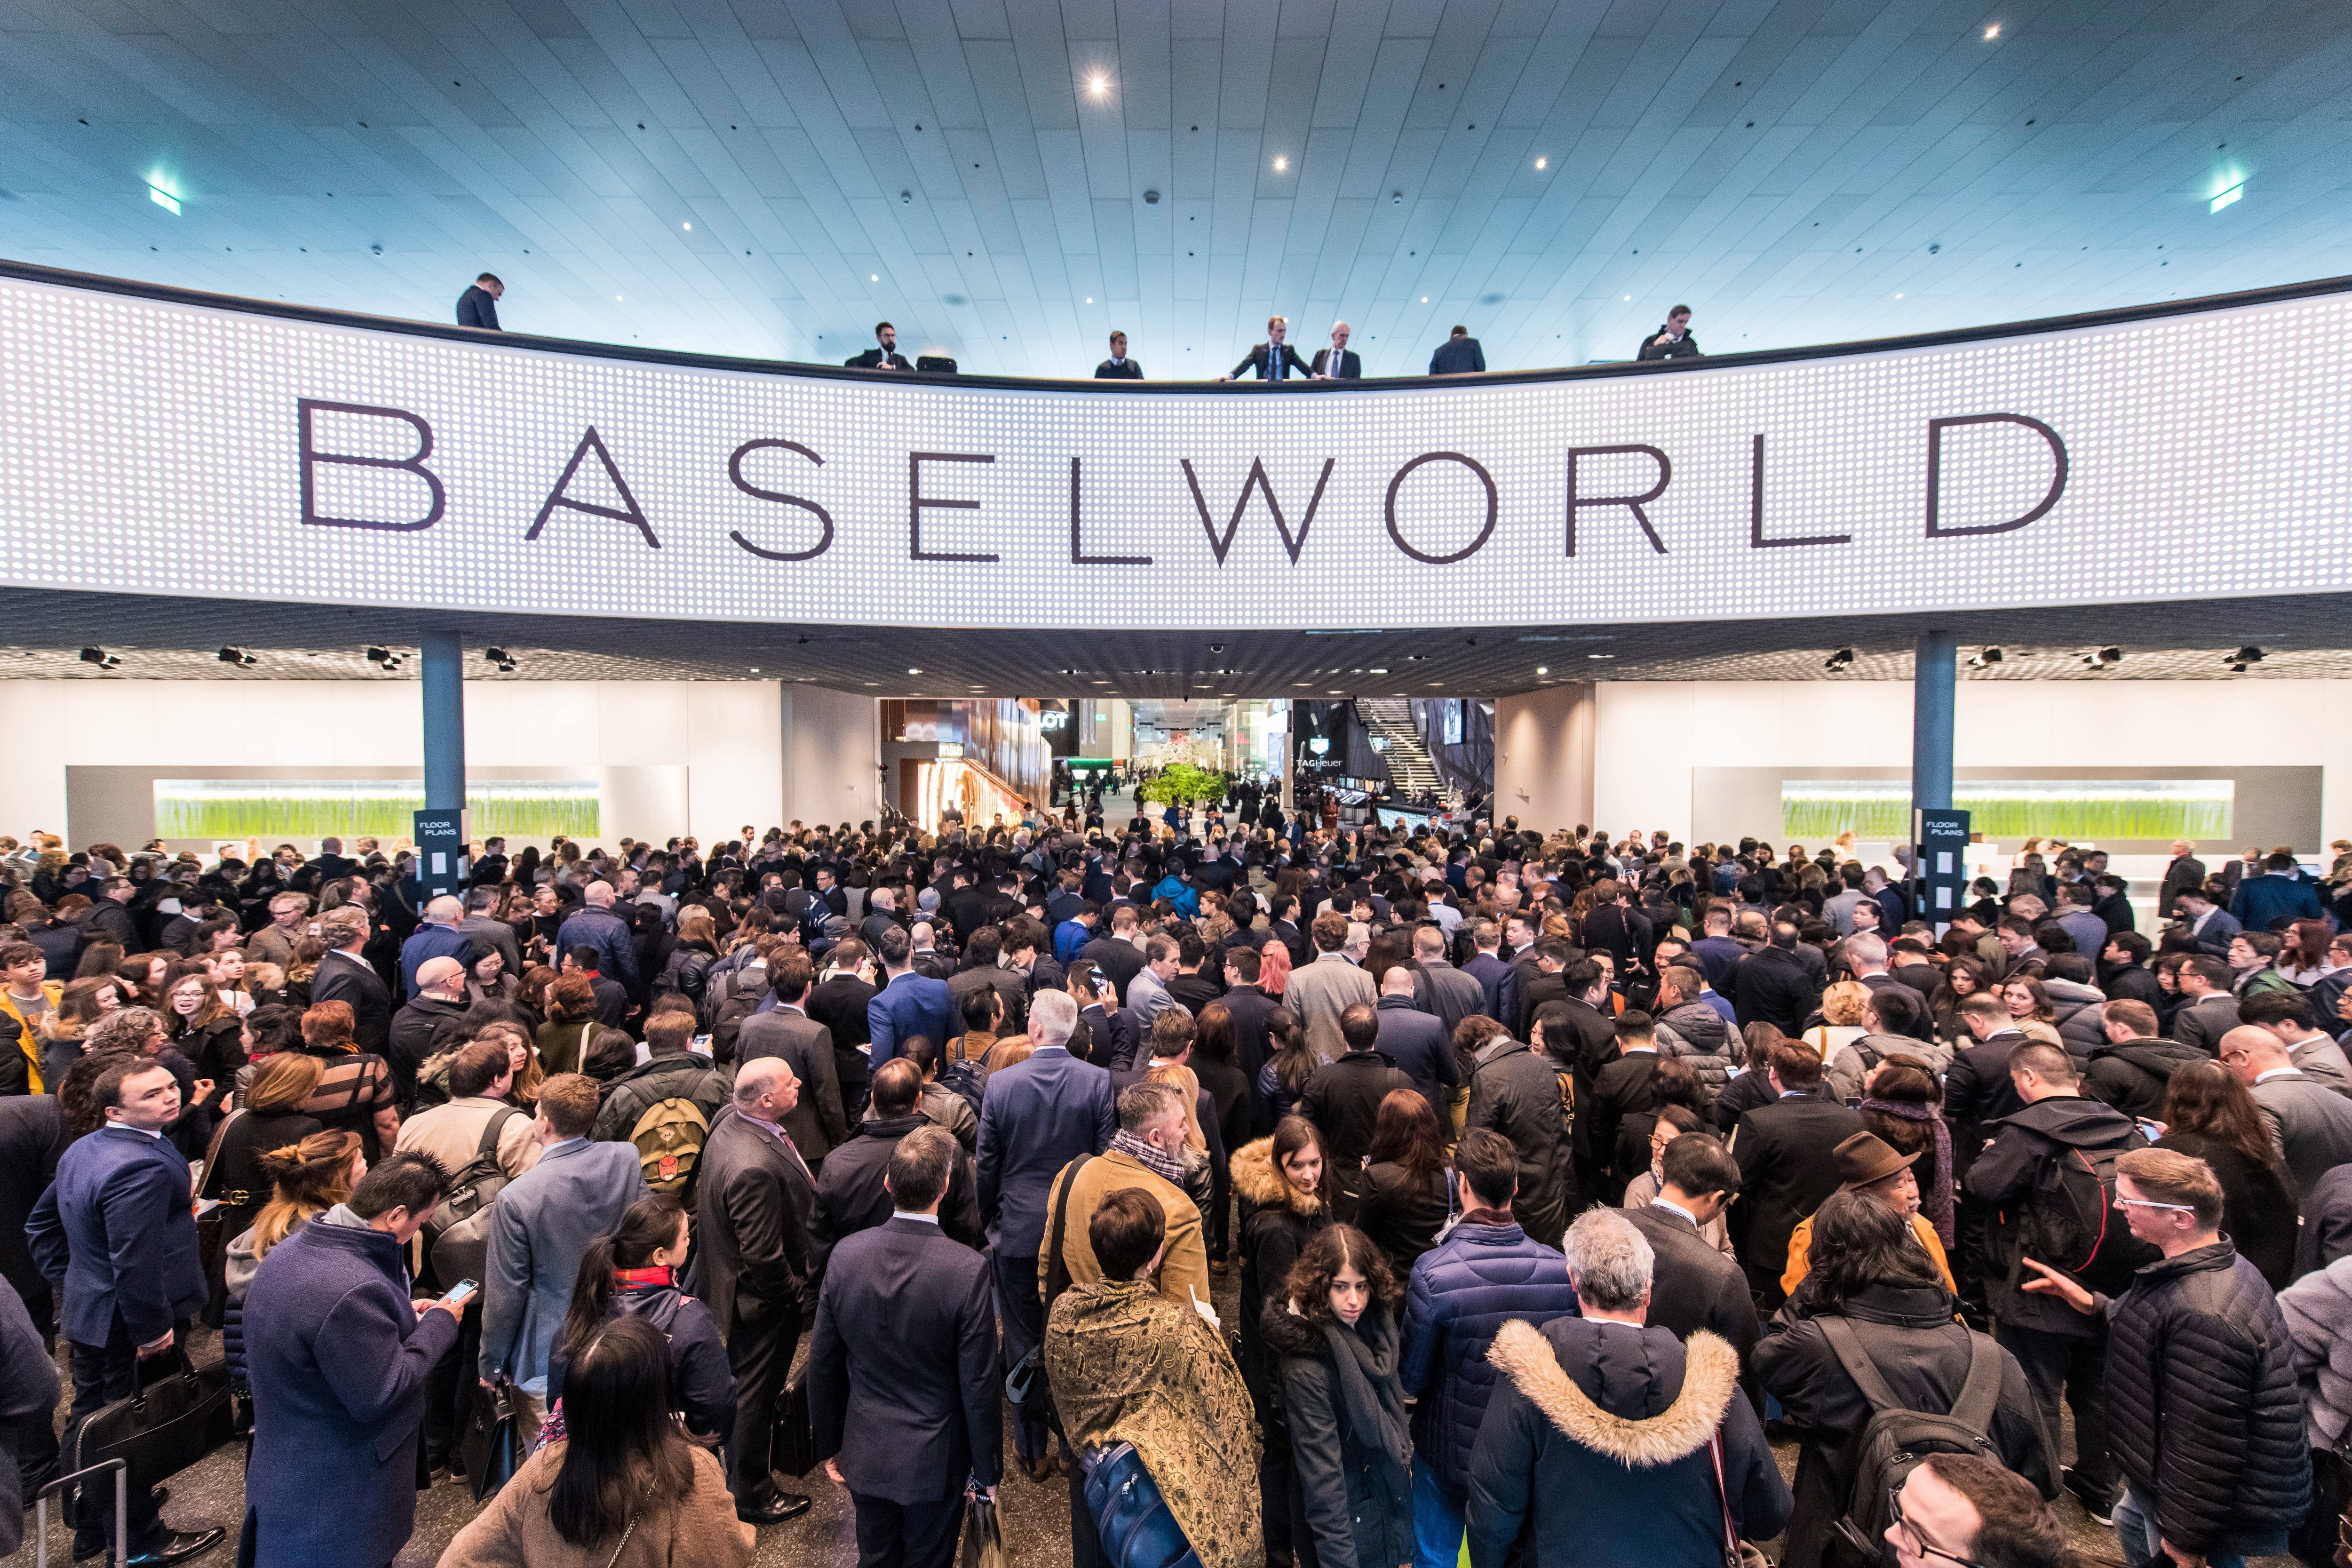 Baselworld fair